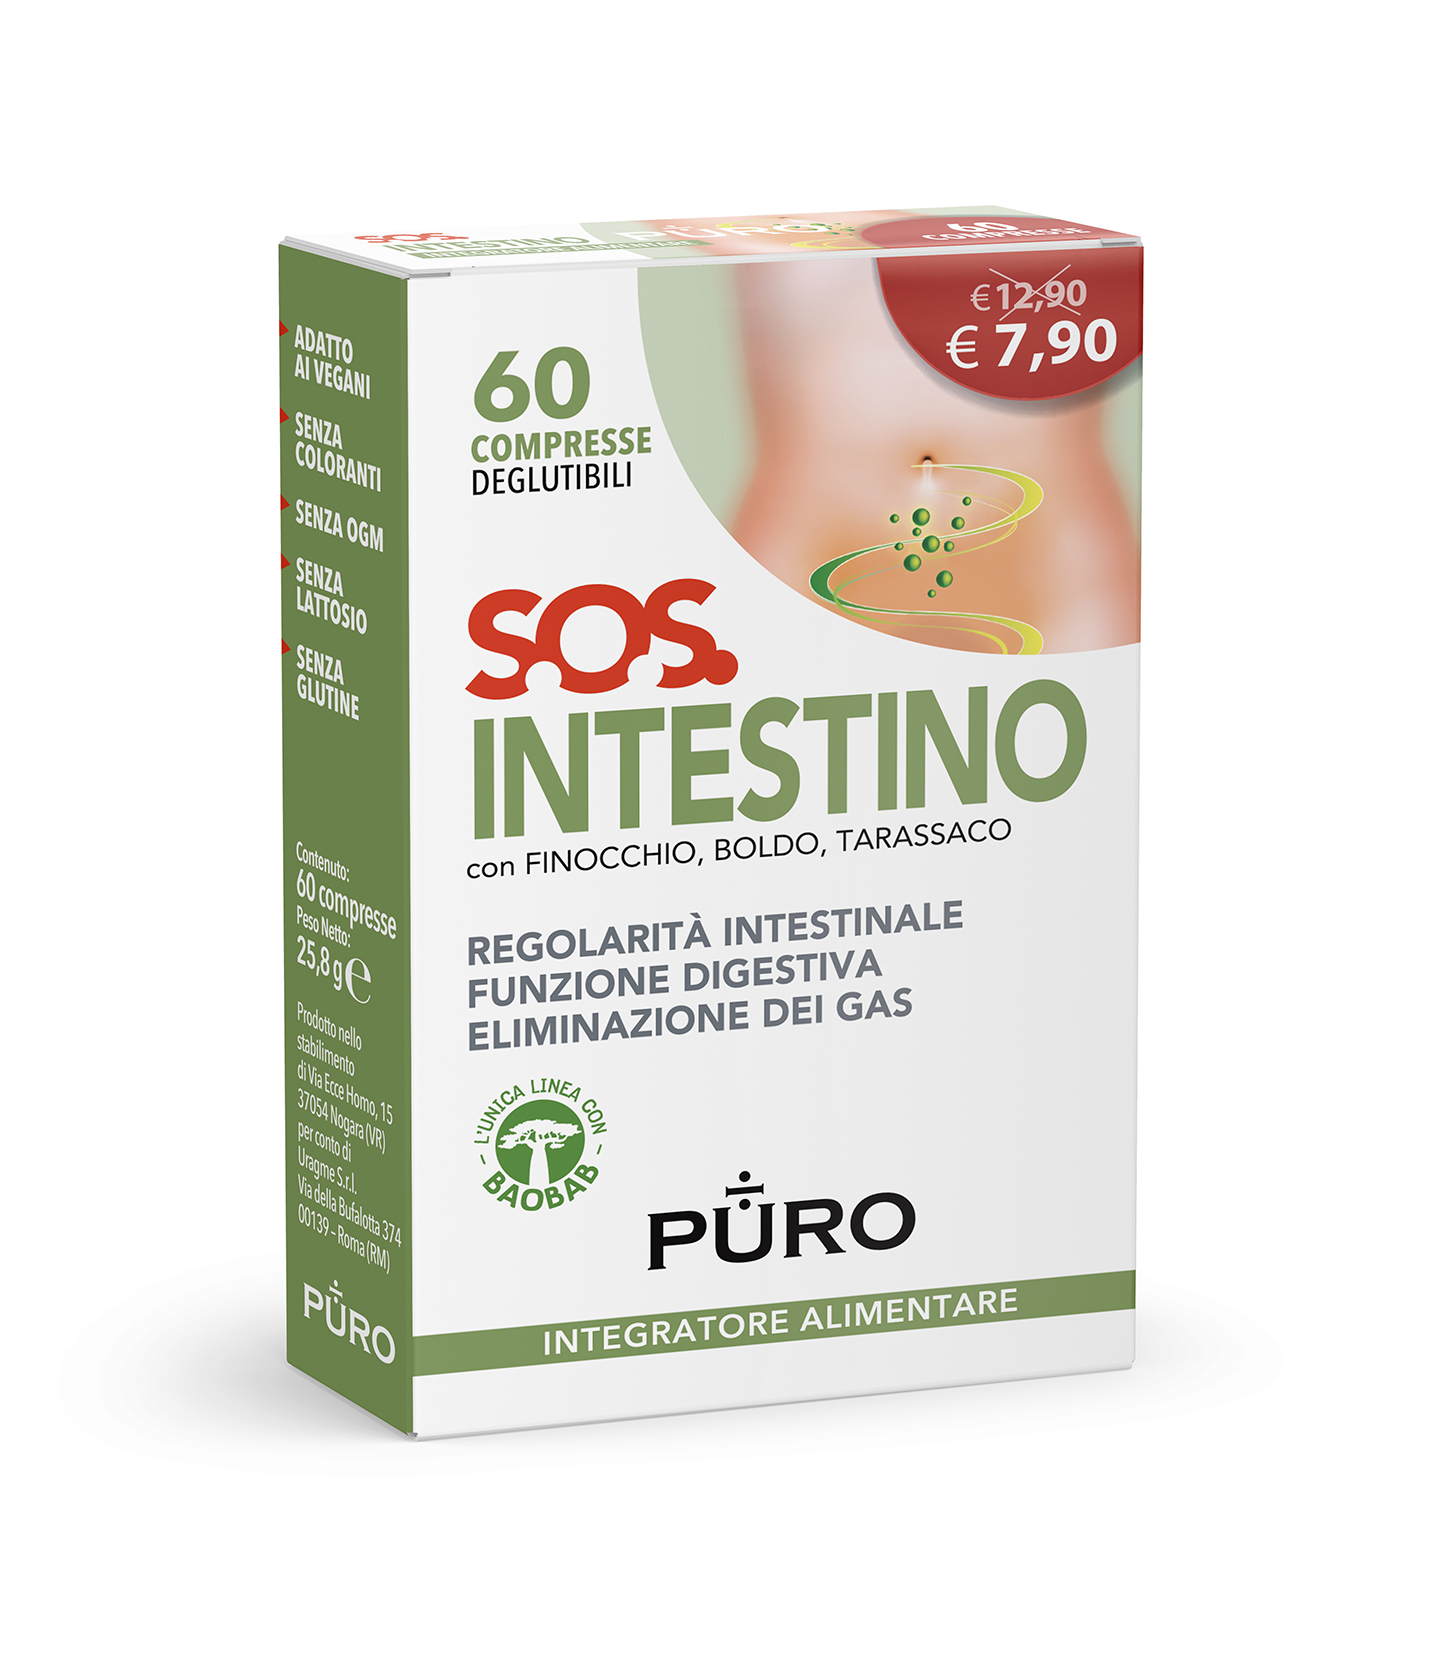 Image of S.O.S. Intestino Puro 60 Compresse Deglutibili